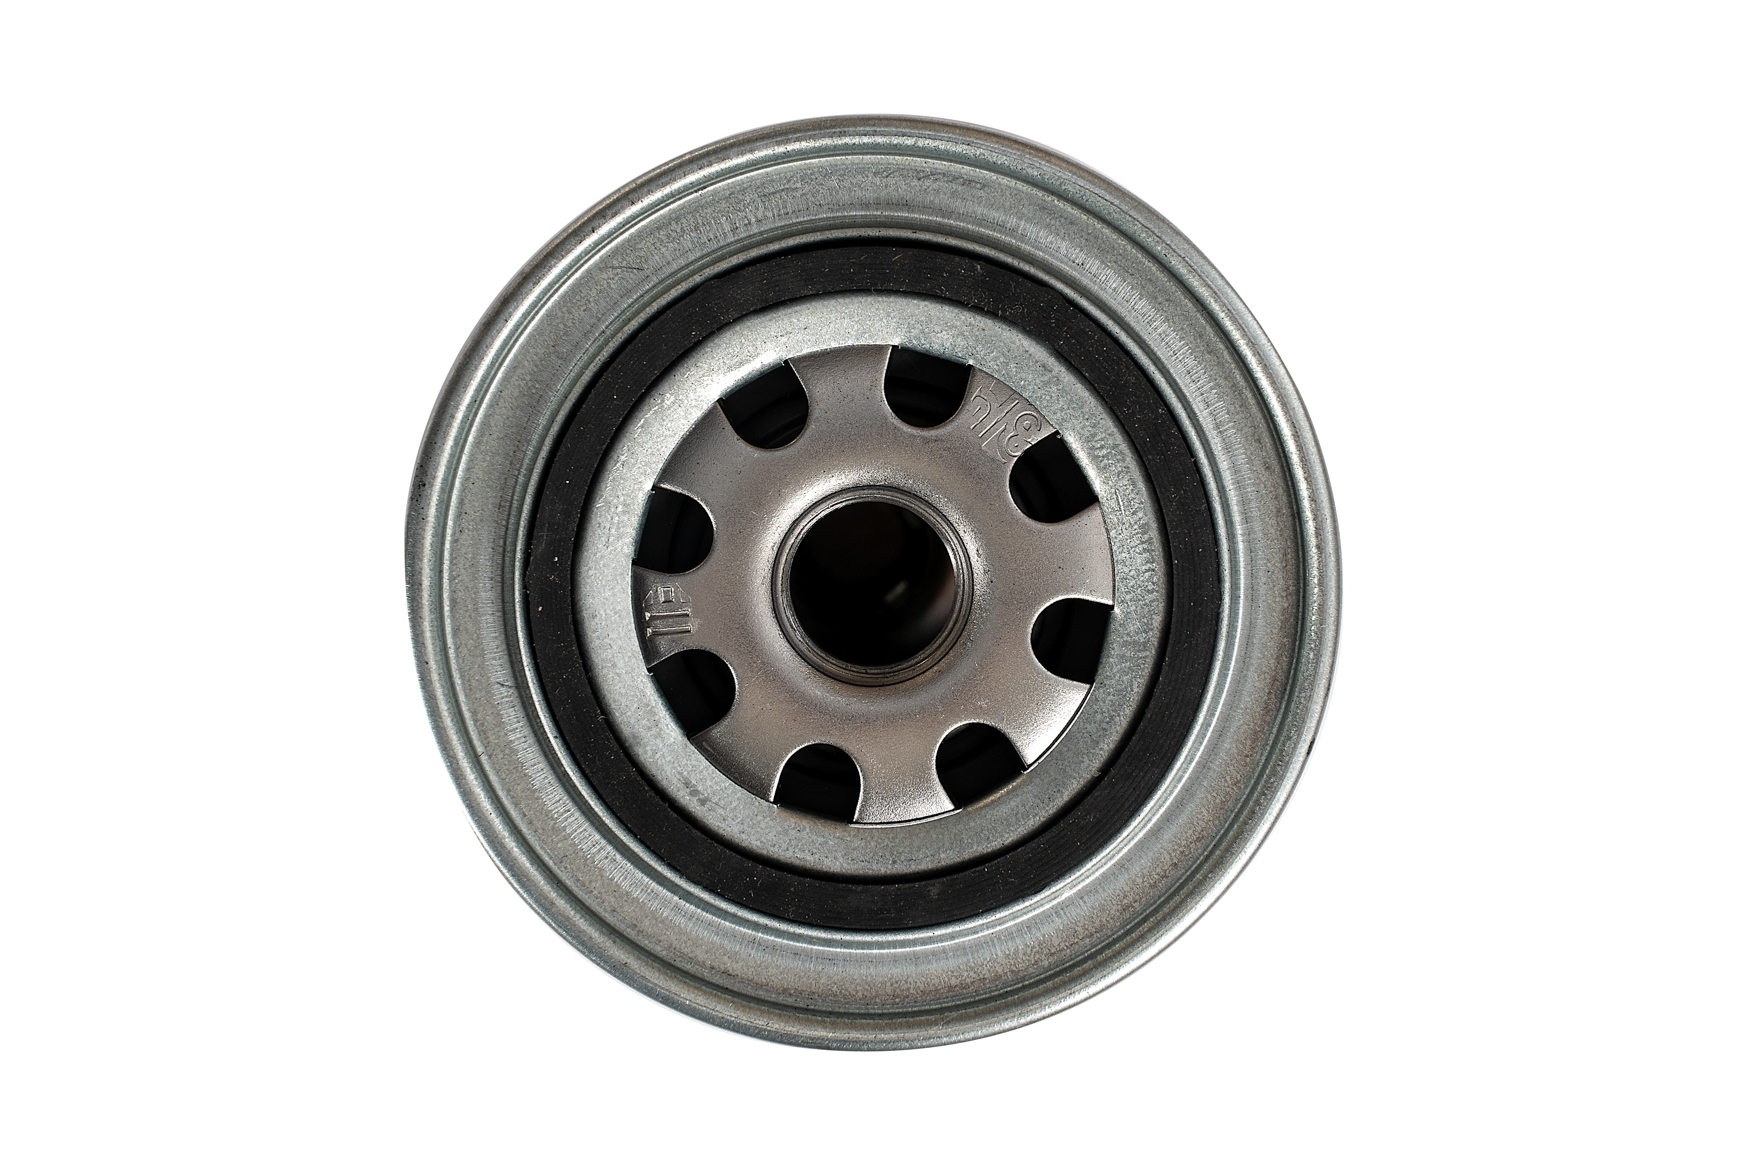 Фильтр очистки масла "MetalPart" для автомобилей ВАЗ 2101-07, ГАЗ, УАЗ с карбюраторным двигателем 